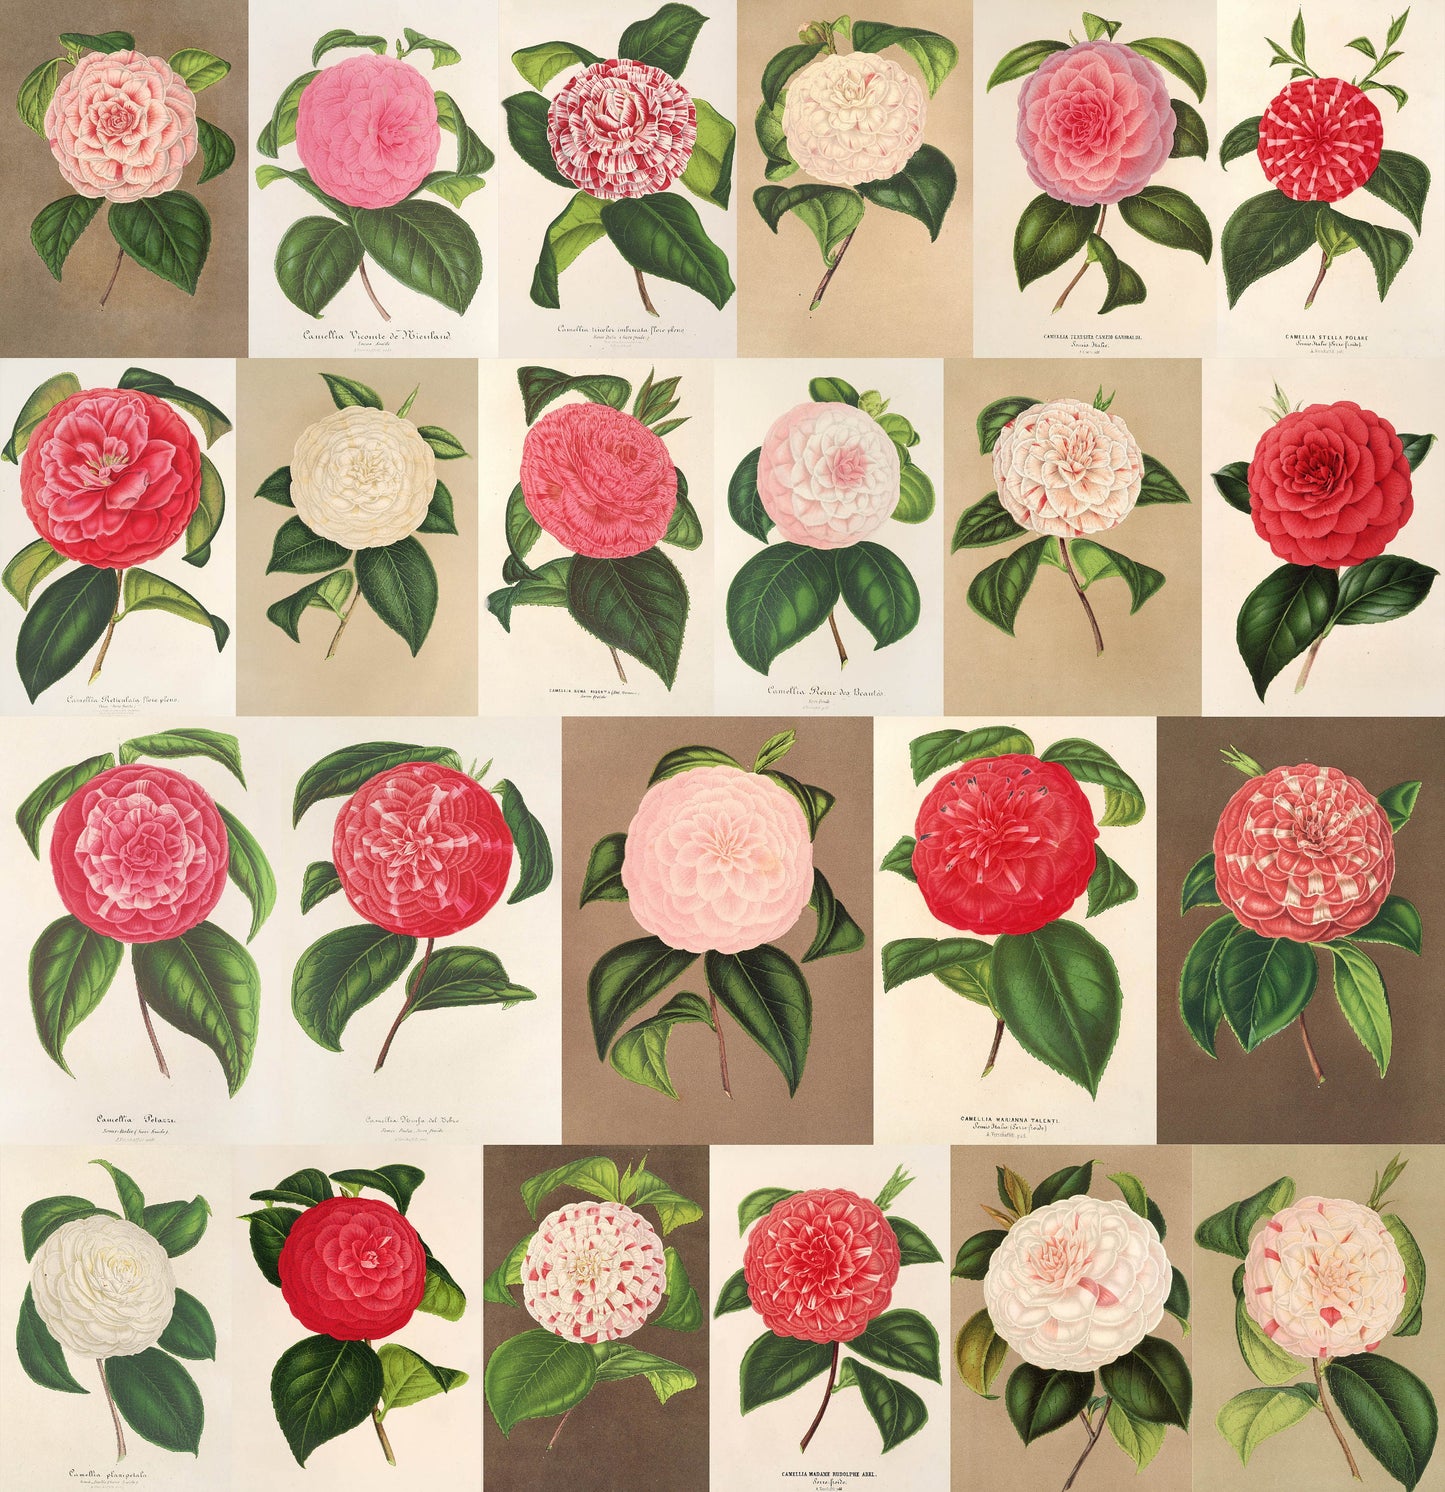 L' Illustration Horticole Camellias Set 2 [23 Images]